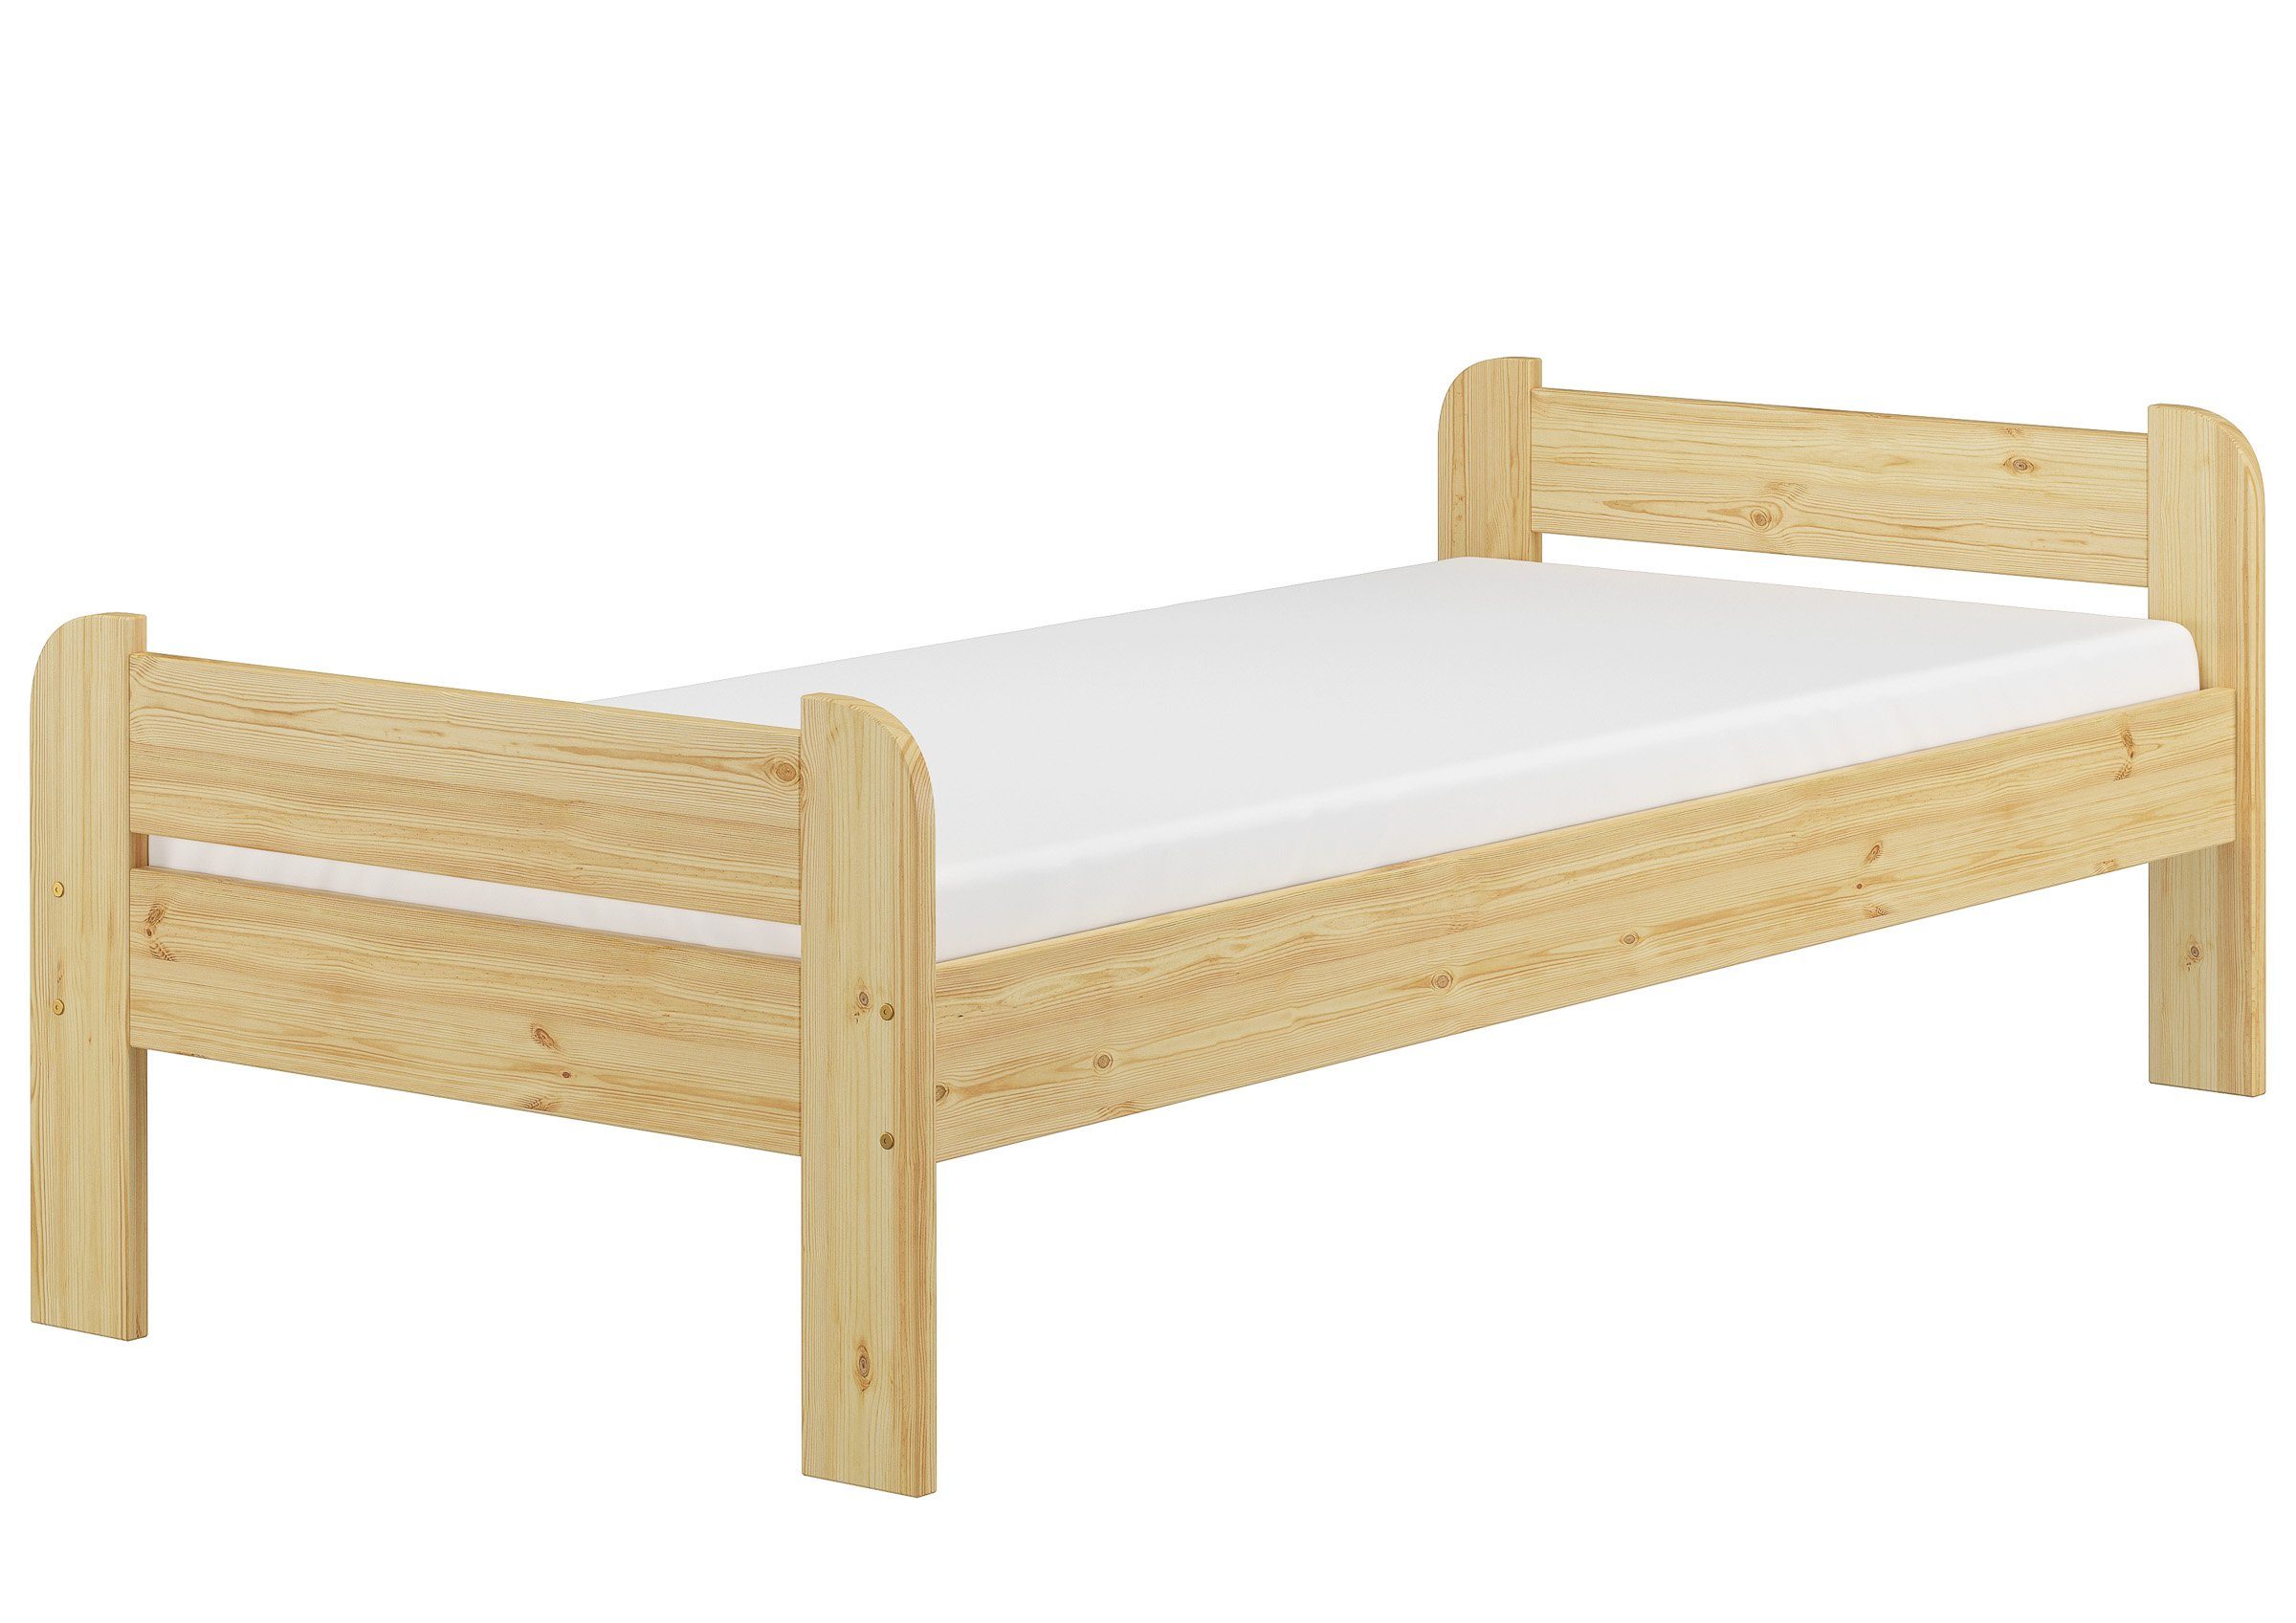 ERST-HOLZ Bett Holzbett 90x200 mit Kopf- und Fußteil, Federleisten und Matratze, Kieferfarblos lackiert